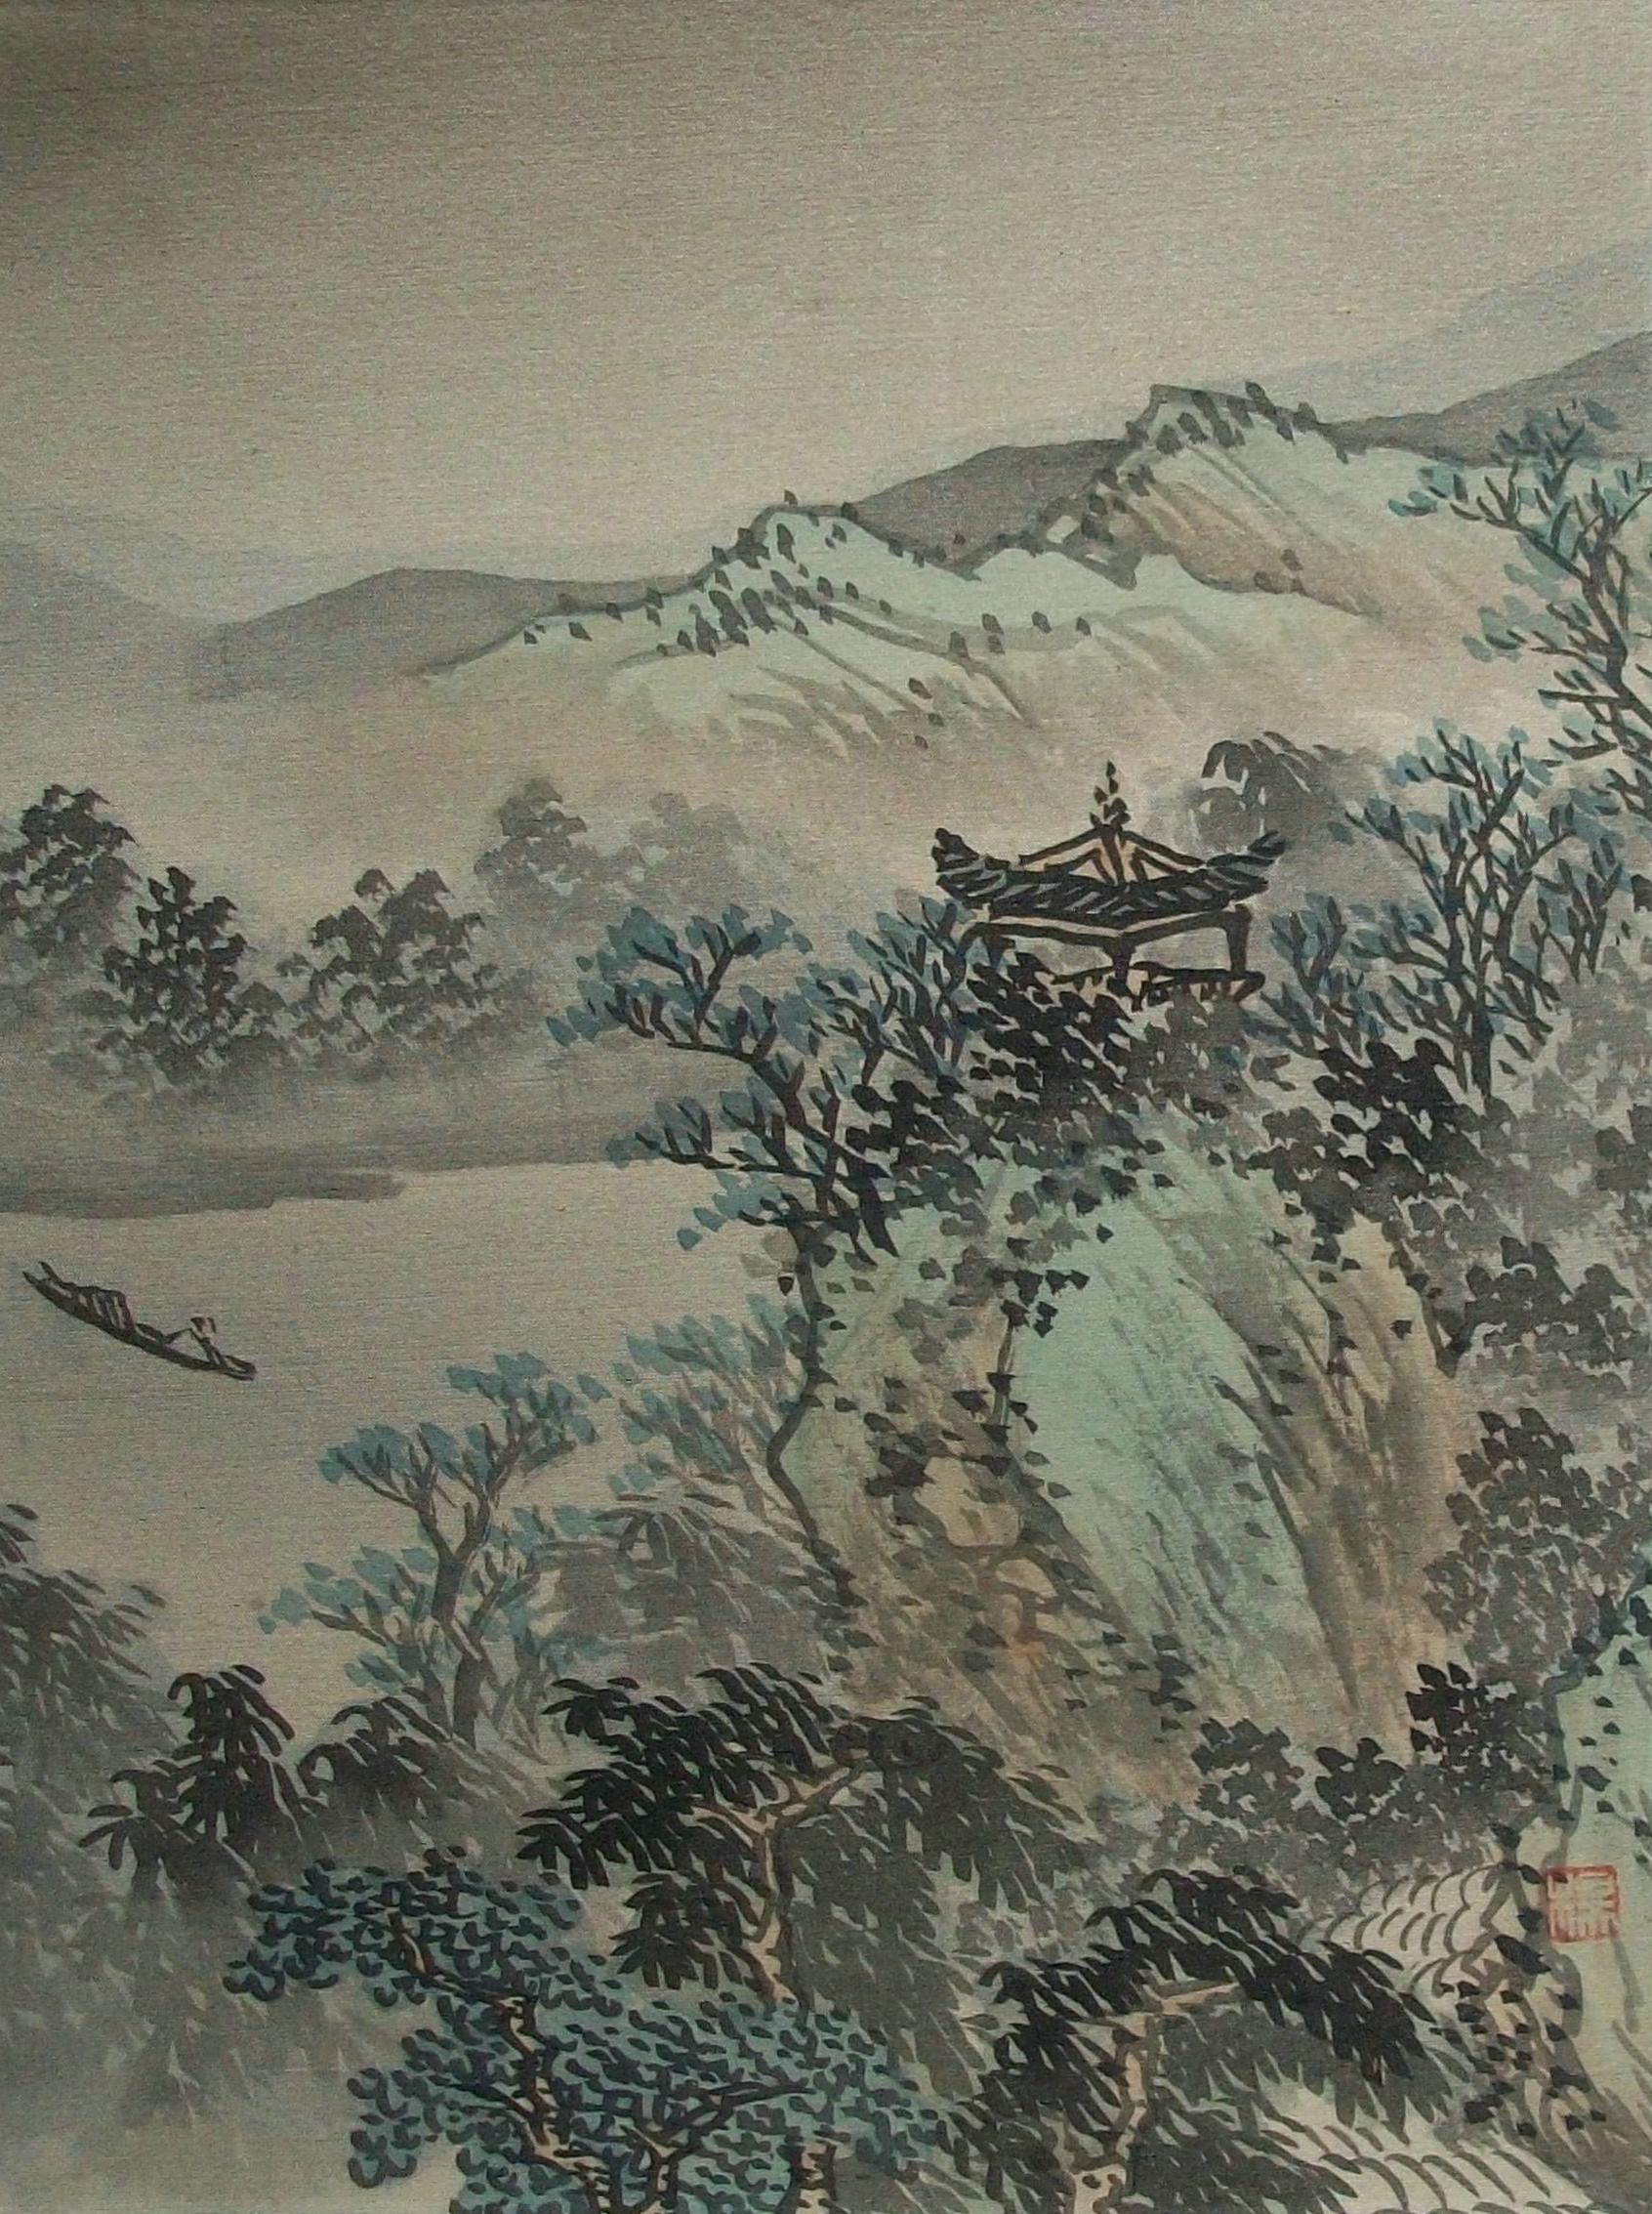 Landschaftsgemälde im traditionellen Vintage-Stil in Aquarell und Tusche auf Seide (auf Papierunterlage aufgetragen) - handgemalt - Seidendamast-Textilumrandung - signiert mit rotem Siegel unten rechts (unbekannter Künstler) - China - Ende